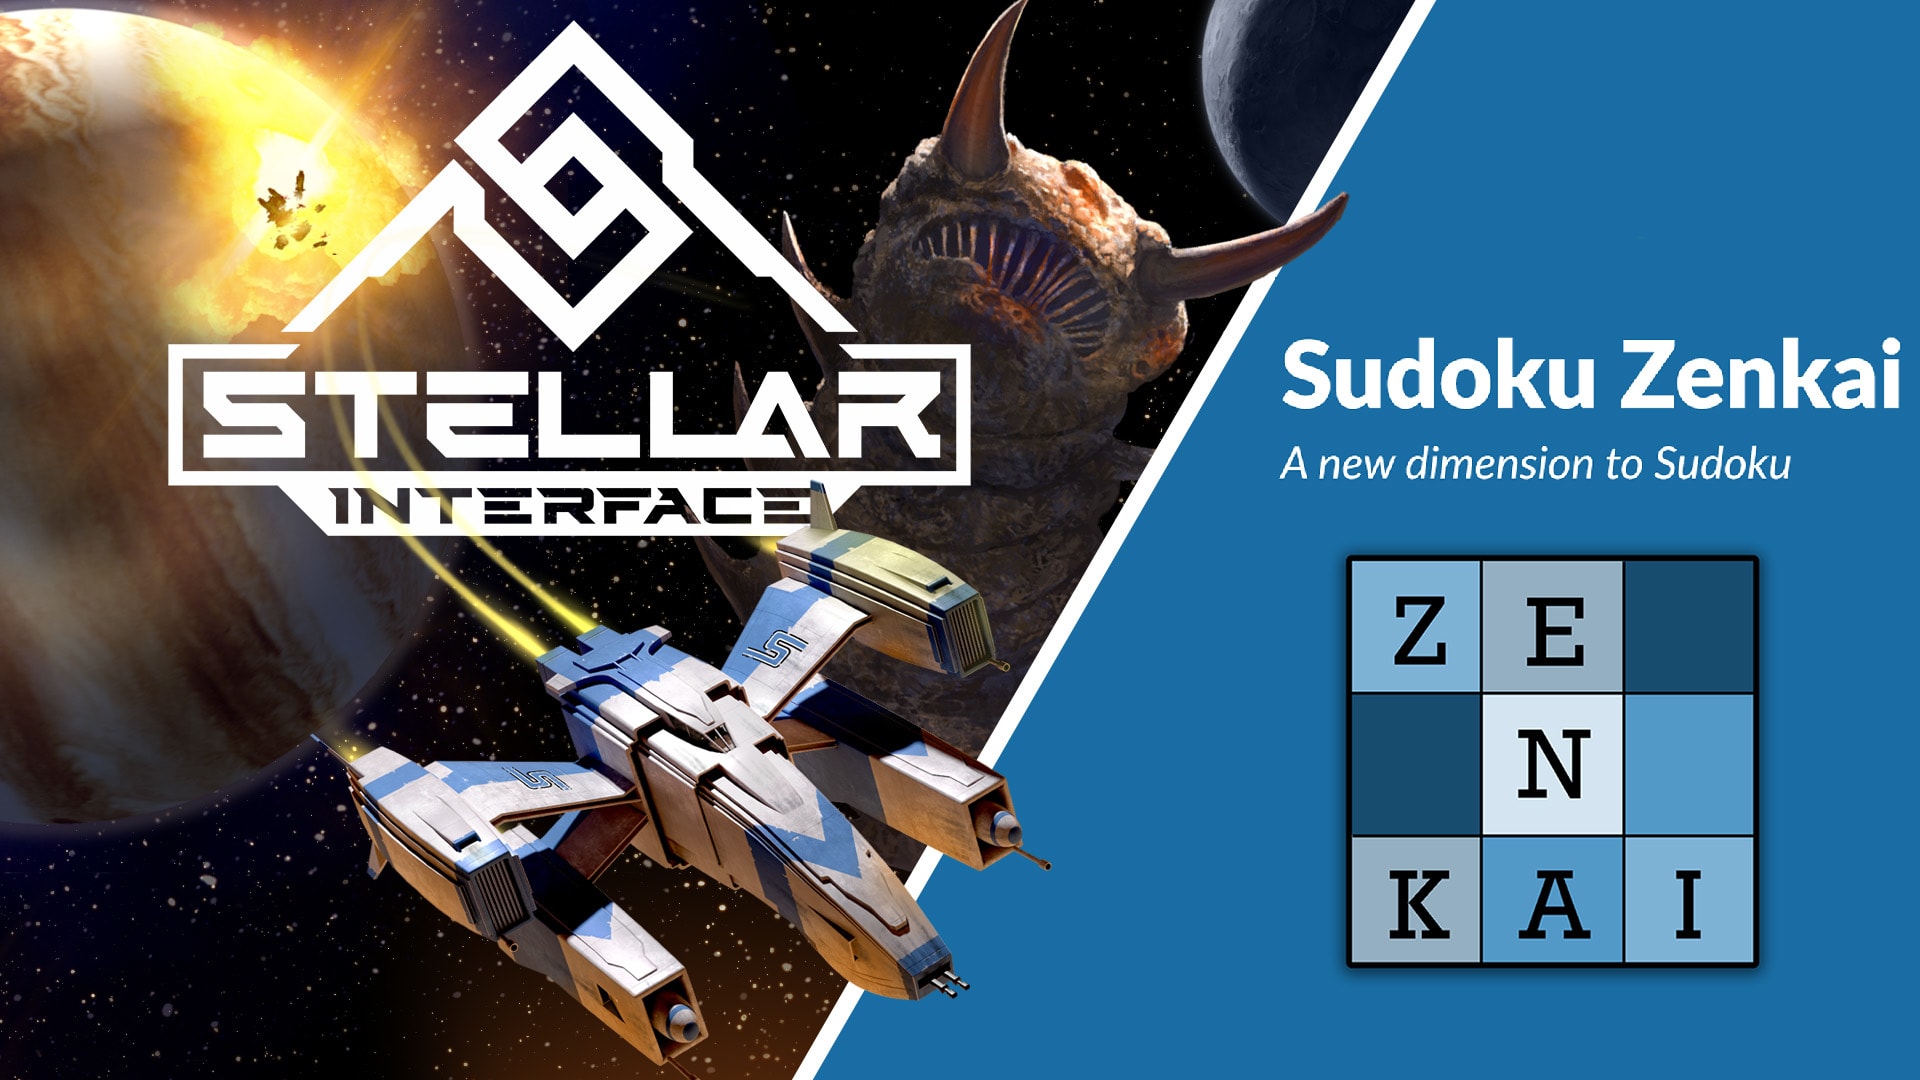 Stellar Interface + Sudoku Zenkai